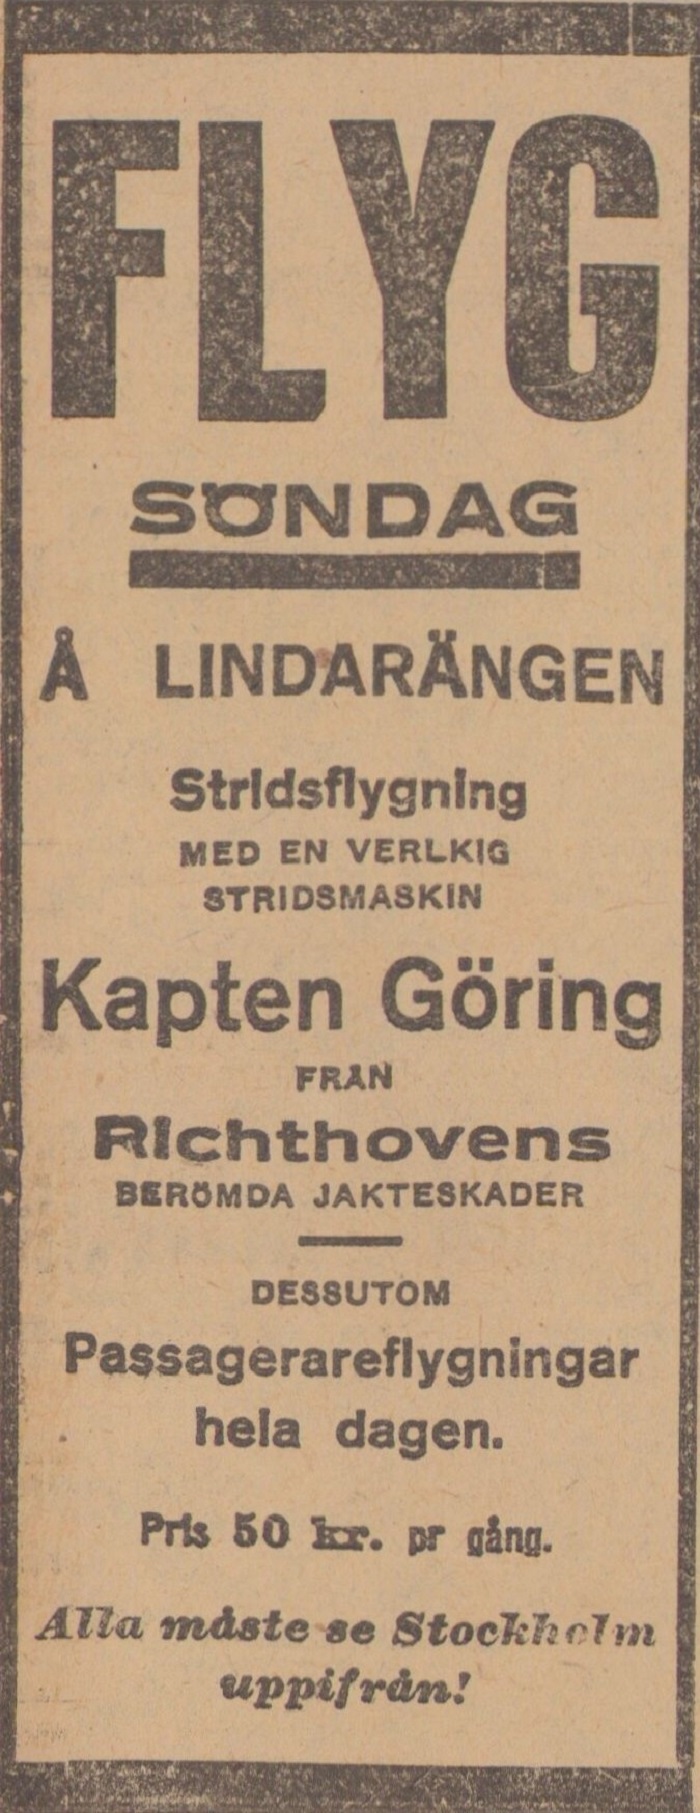 Tidningsklipp med texten: Kapten Göring från Richthovens berömda jakteskader.